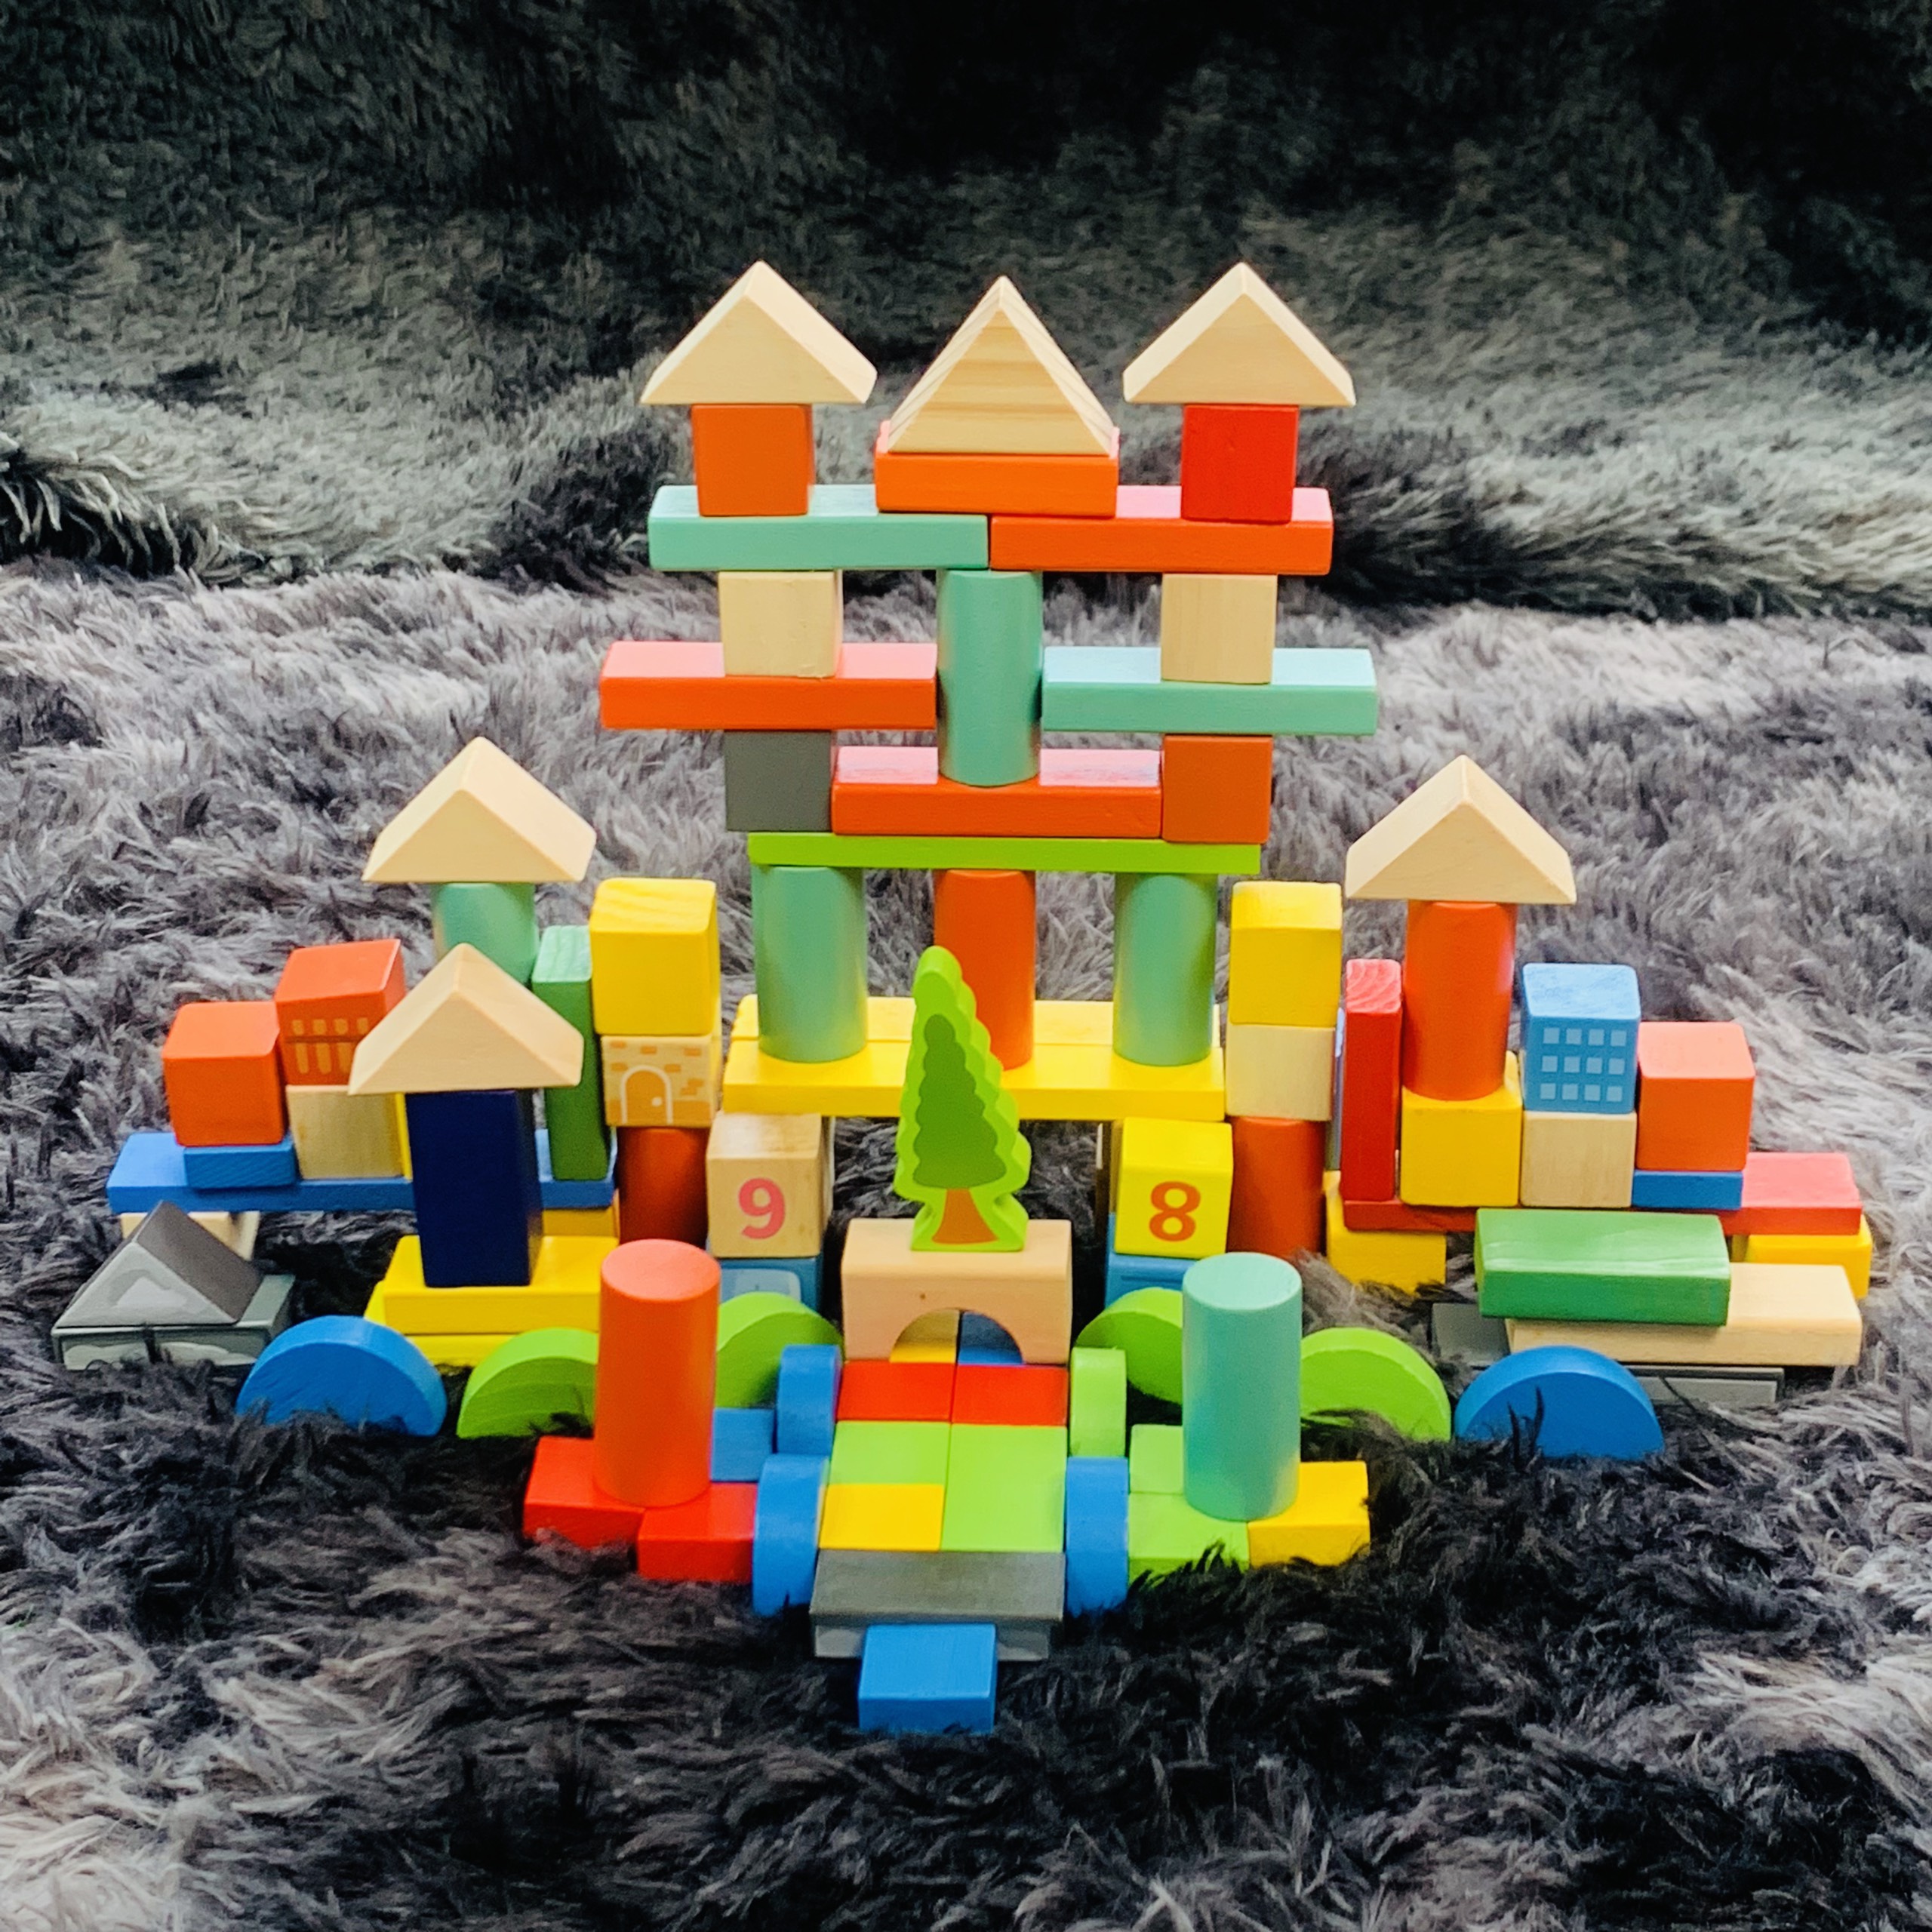 ( TẶNG TRANH GHÉP 9 MIẾNG ) Đồ Chơi Gỗ Thông Minh Bộ Xếp Hình Lego Nhiều Mảnh Ghép Cho Bé Phát Triển Tư Duy Sáng Tạo, Bộ Ghép Hình Bằng Gỗ Benrikids Cho Trẻ Em Từ 1 Đến 5 Tuổi